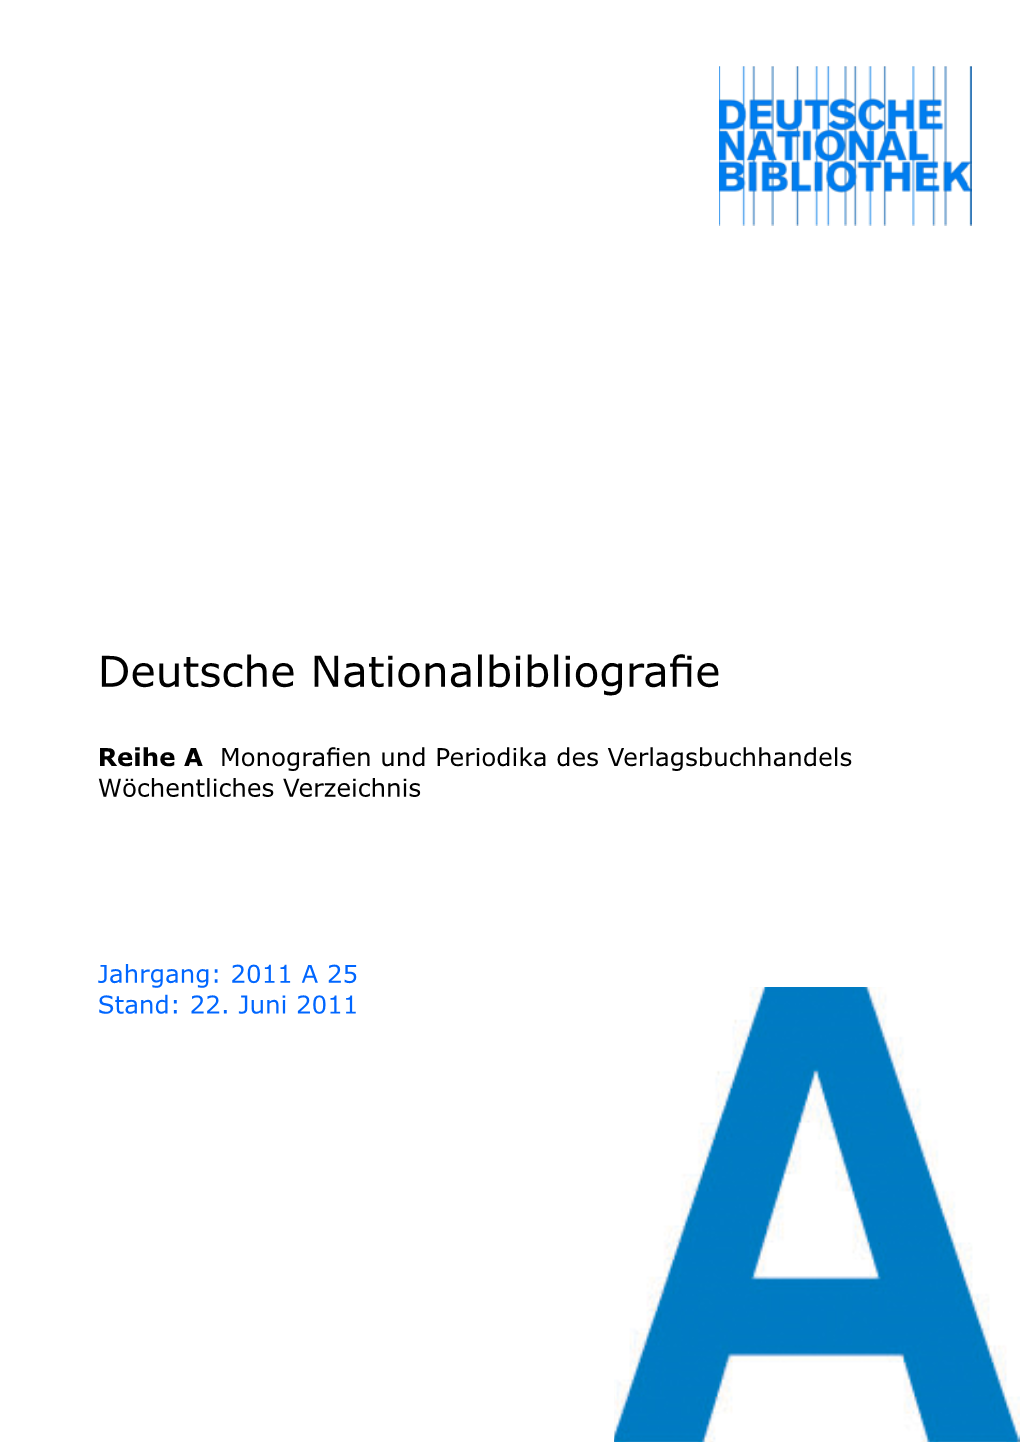 Deutsche Nationalbibliografie 2011 a 25